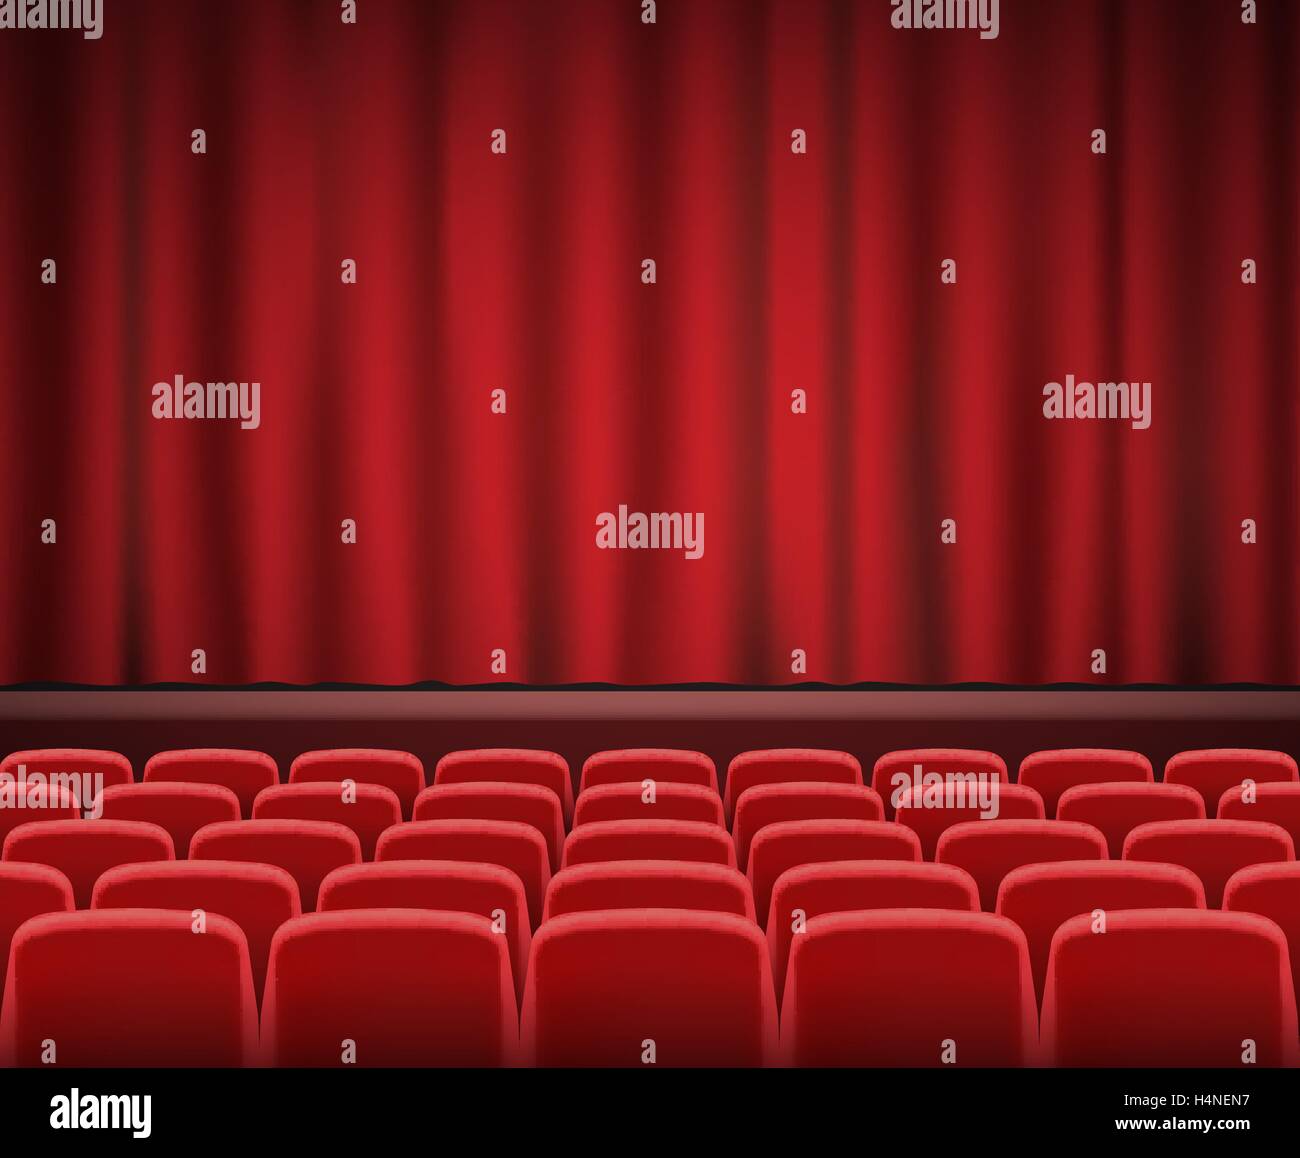 Des rangées de sièges de théâtre ou cinéma rouge en face du stade tous Illustration de Vecteur